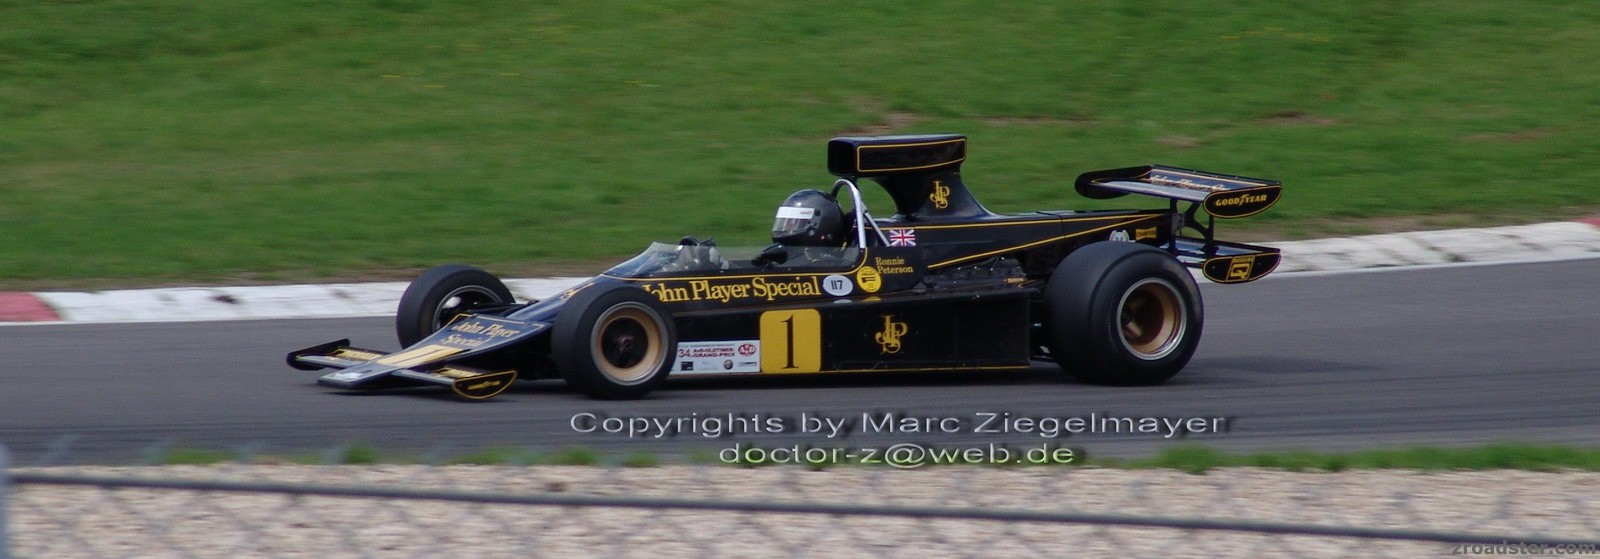 AvD Oldtimer Grand Prix 2006